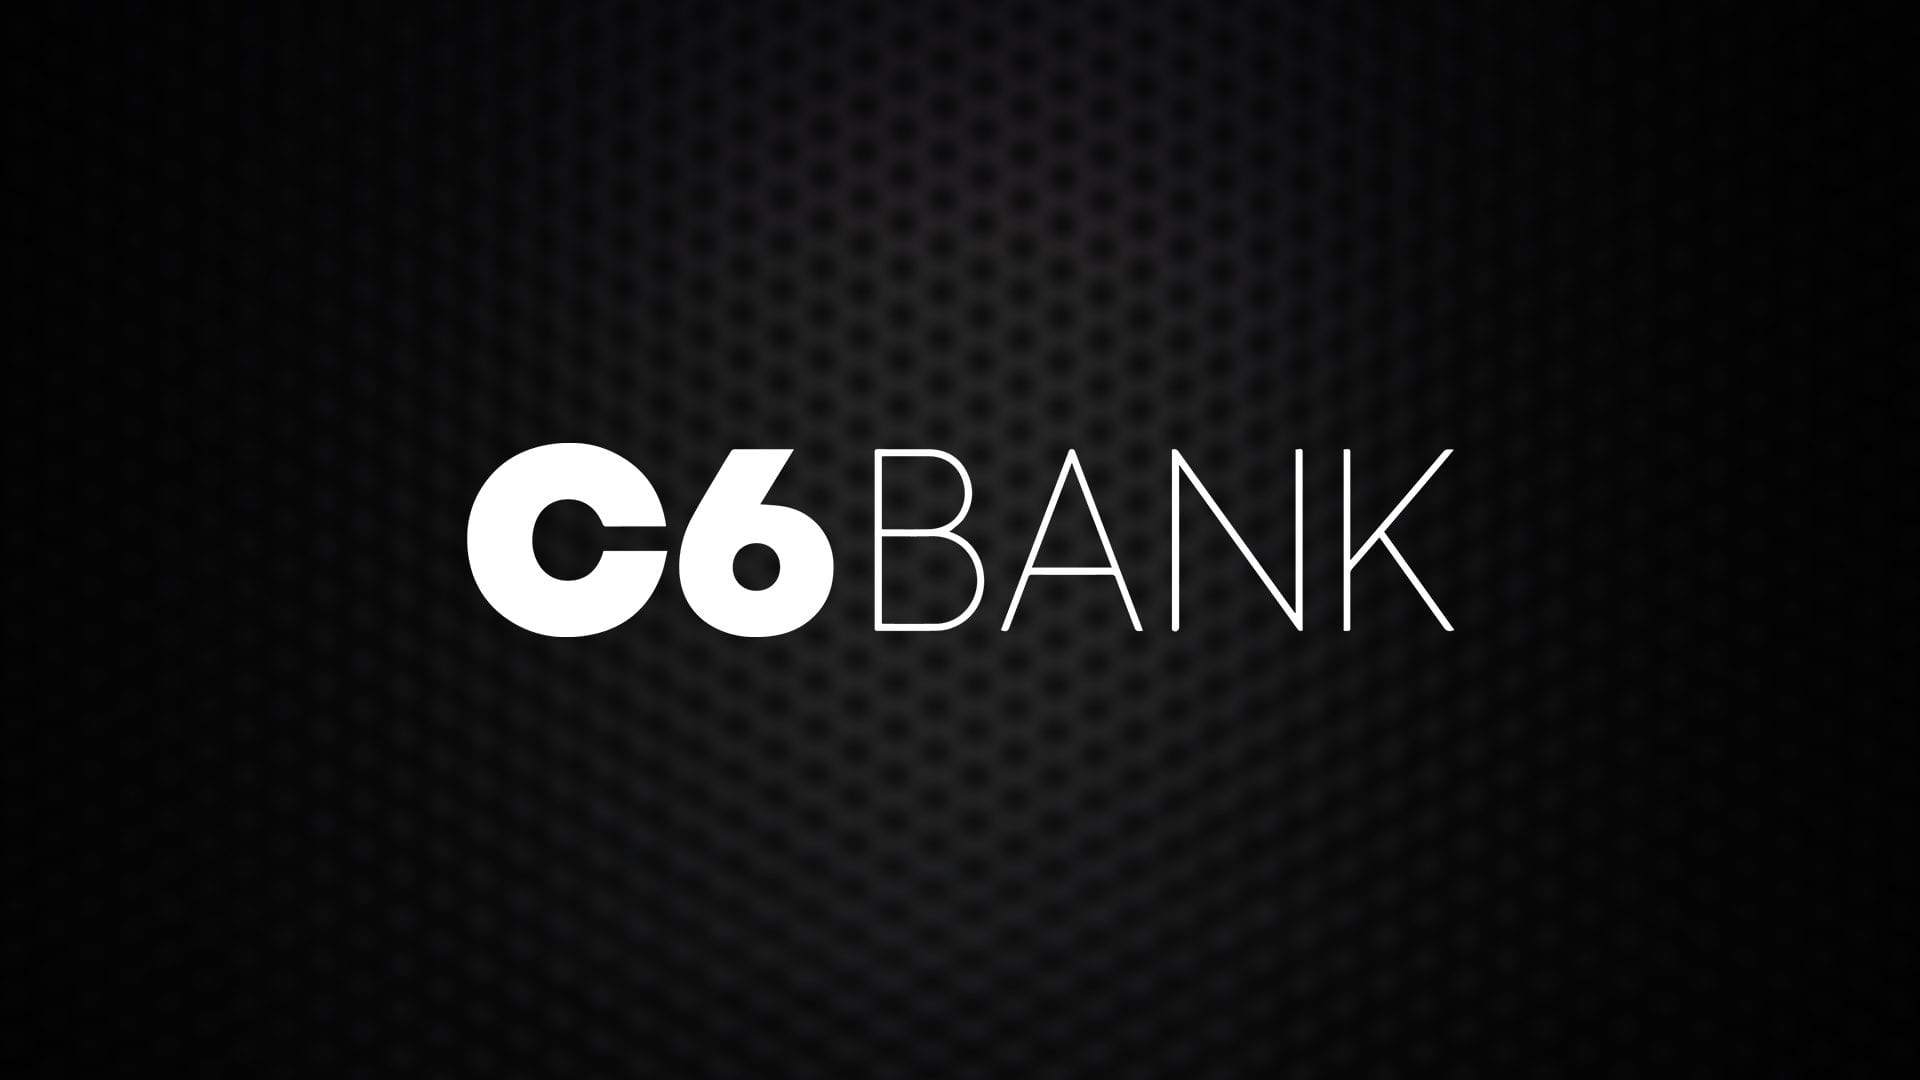 Startup C6 Bank abre vagas em diversas áreas - Saiba como se inscrever